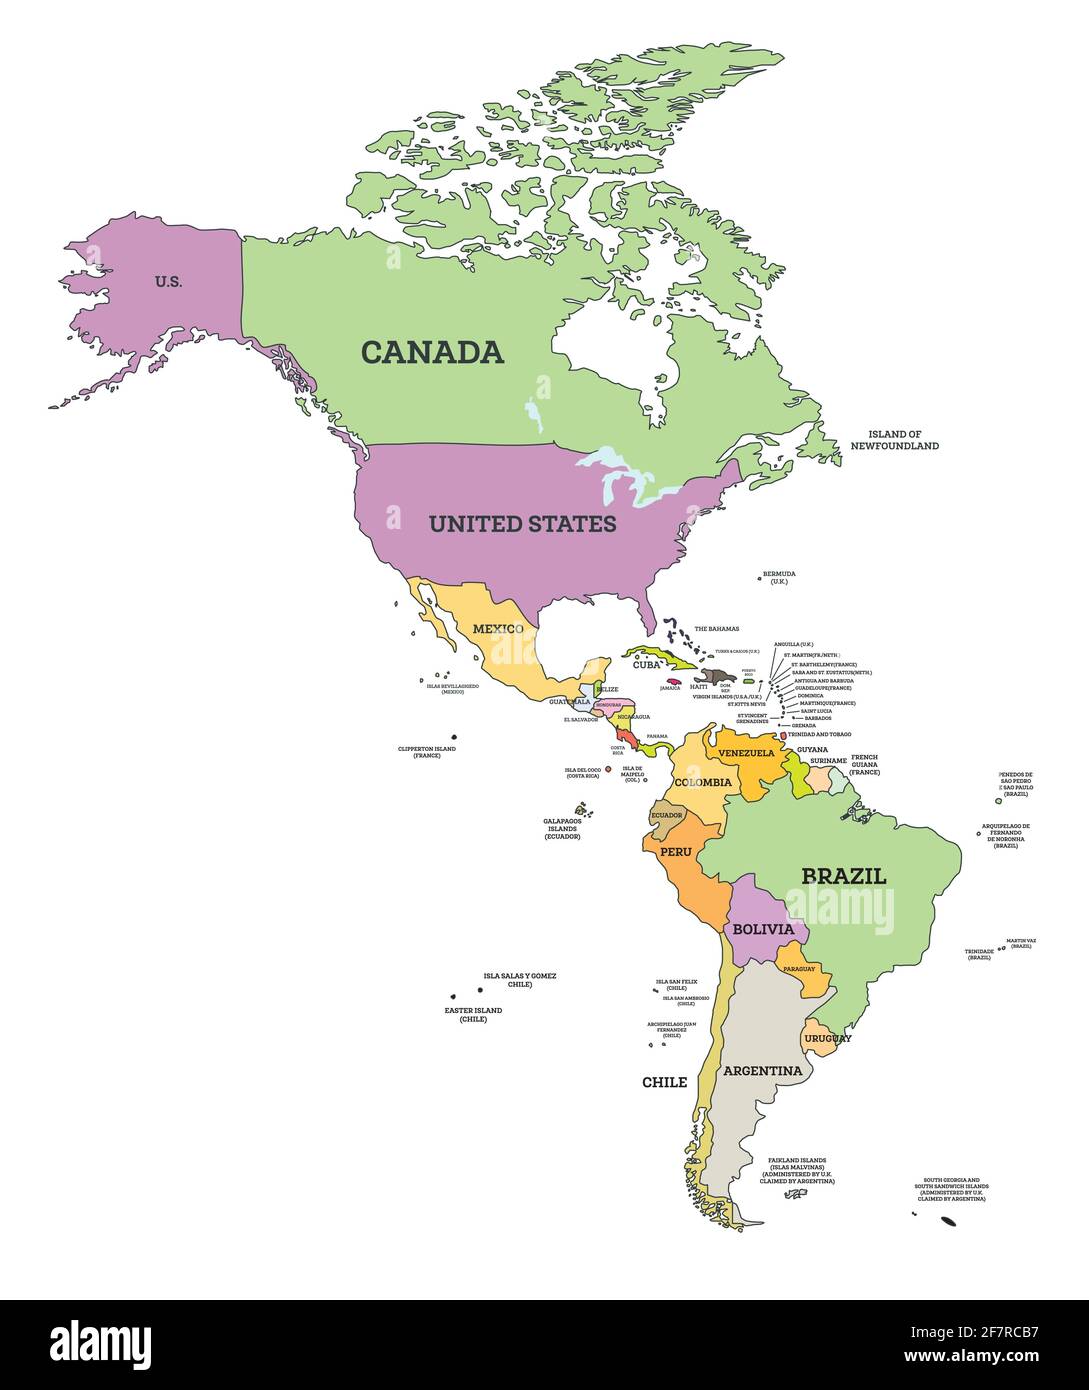 Carte politique de l'Amérique du Sud et du Nord dans Mercator projection. Illustration vectorielle. Carte avec nom des pays isolés sur blanc. Illustration de Vecteur